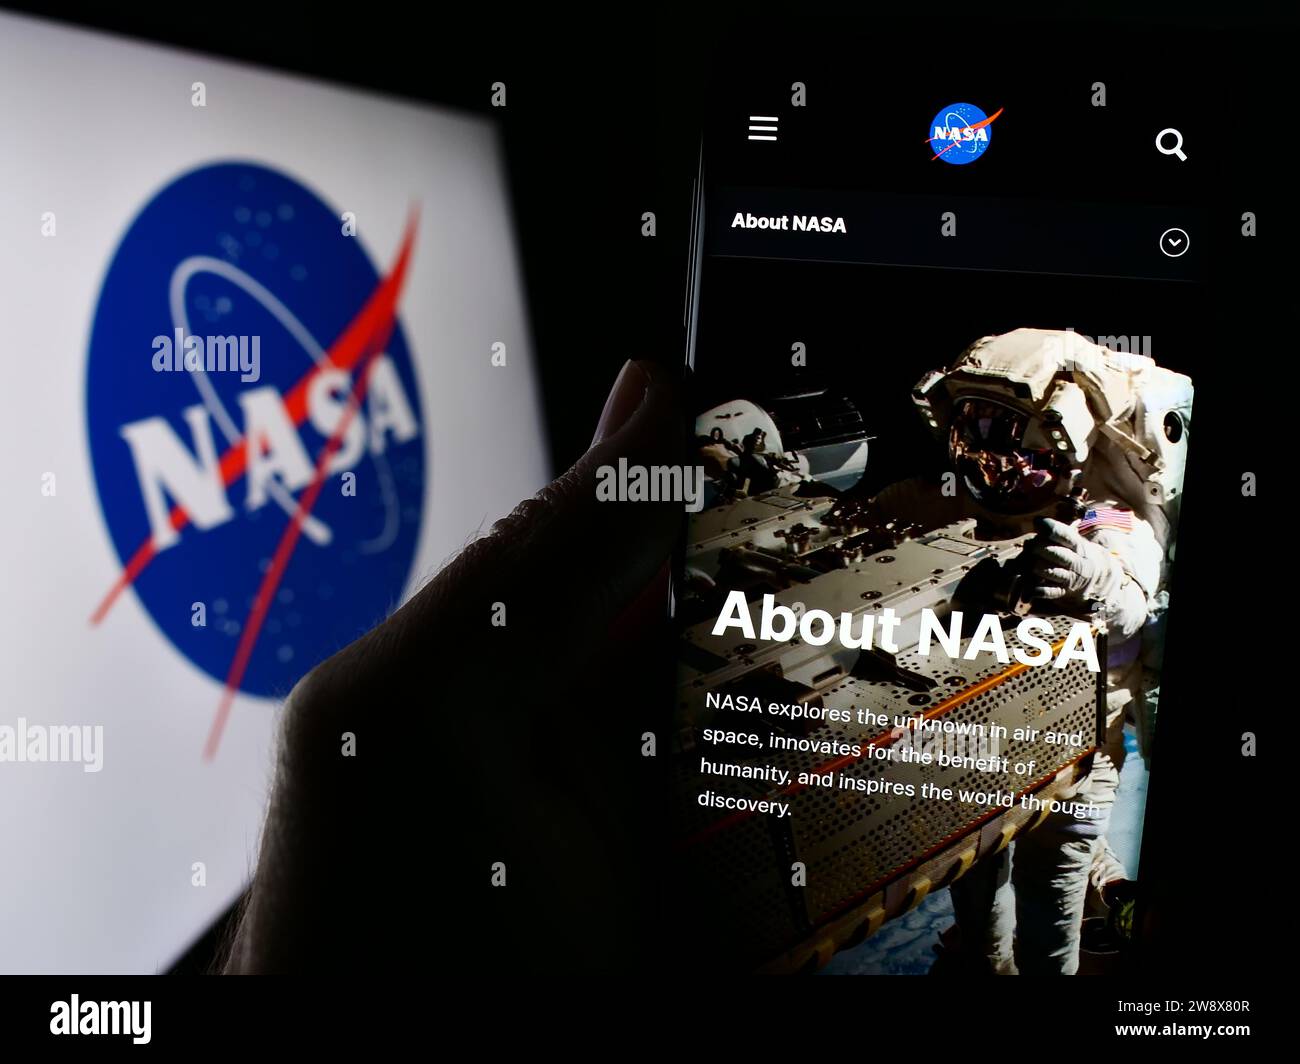 Persona in possesso di cellulare con pagina Web della NASA (National Aeronautics and Space Administration) con logo. Concentrarsi sul centro del display del telefono. Foto Stock